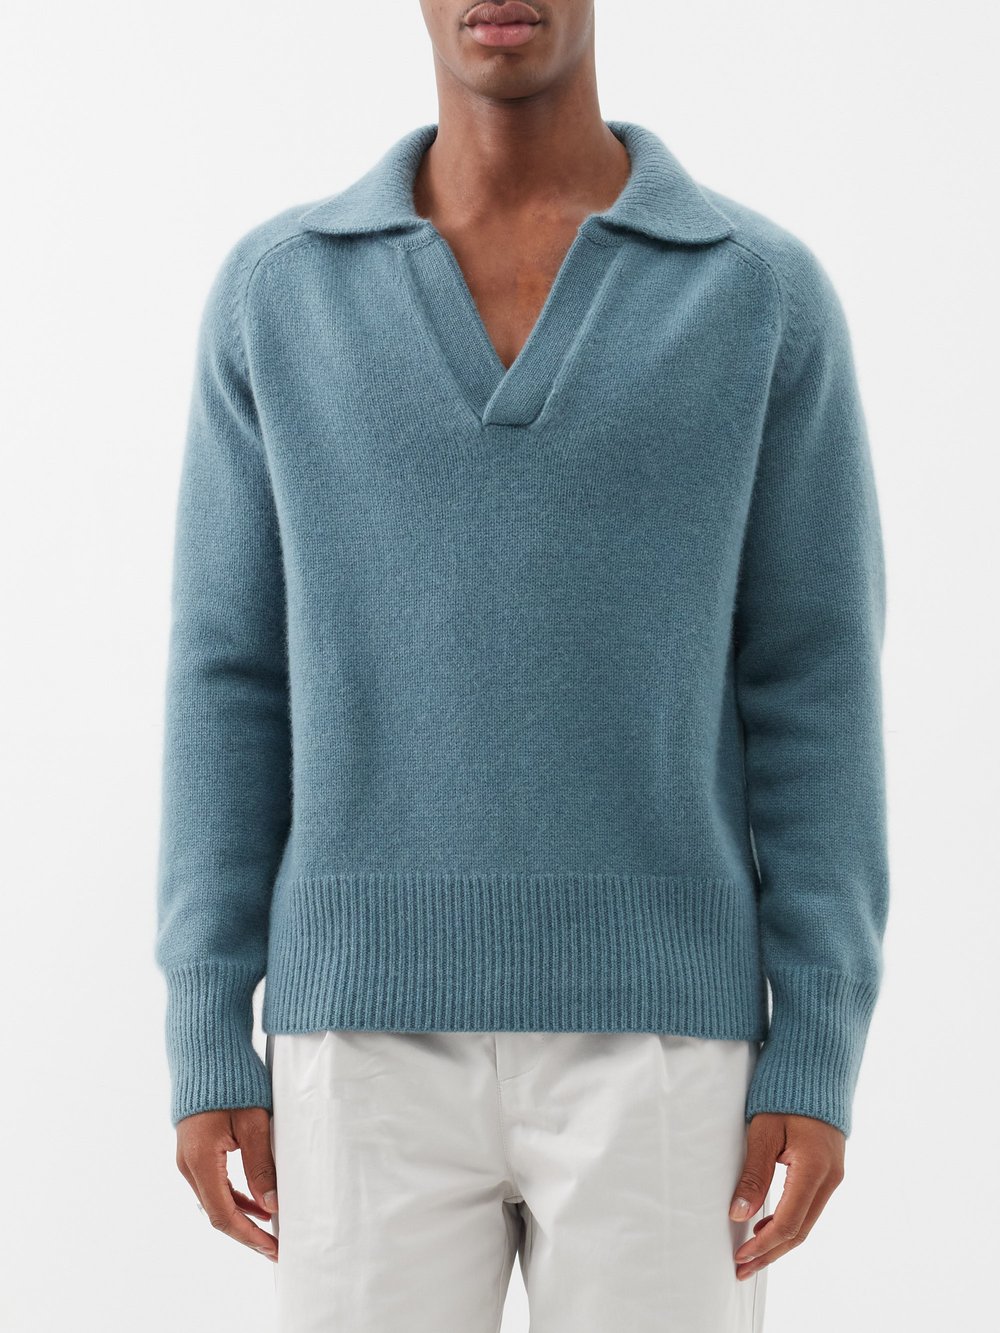 цена Кашемировый свитер-поло с открытым воротником mr clifton gate Arch4, синий